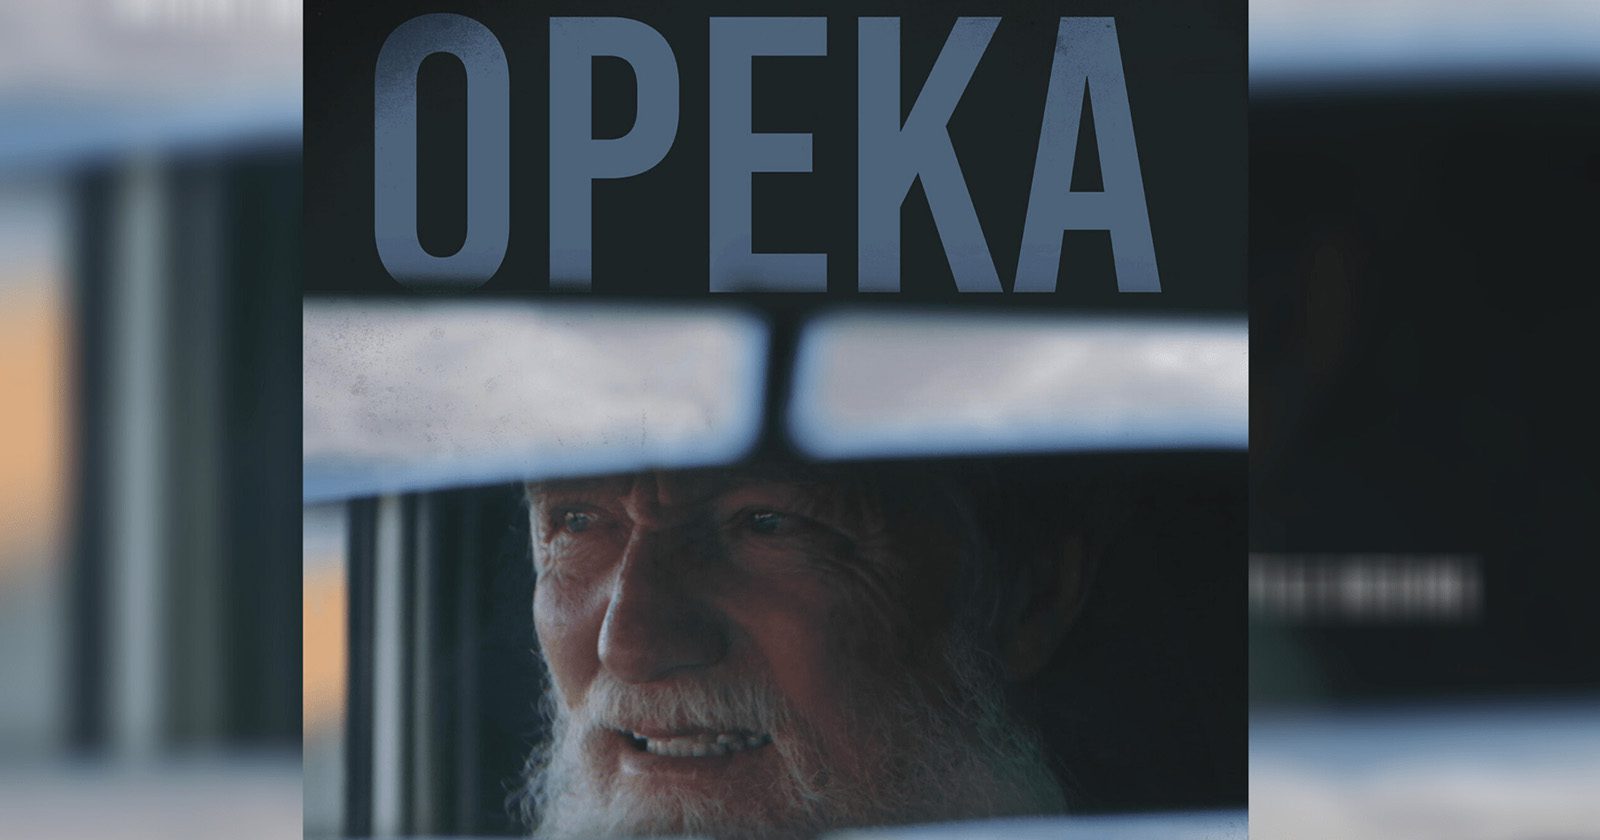 Il documentario “Opeka” vince la Palma d’Oro al Beverly Hills Film Festival